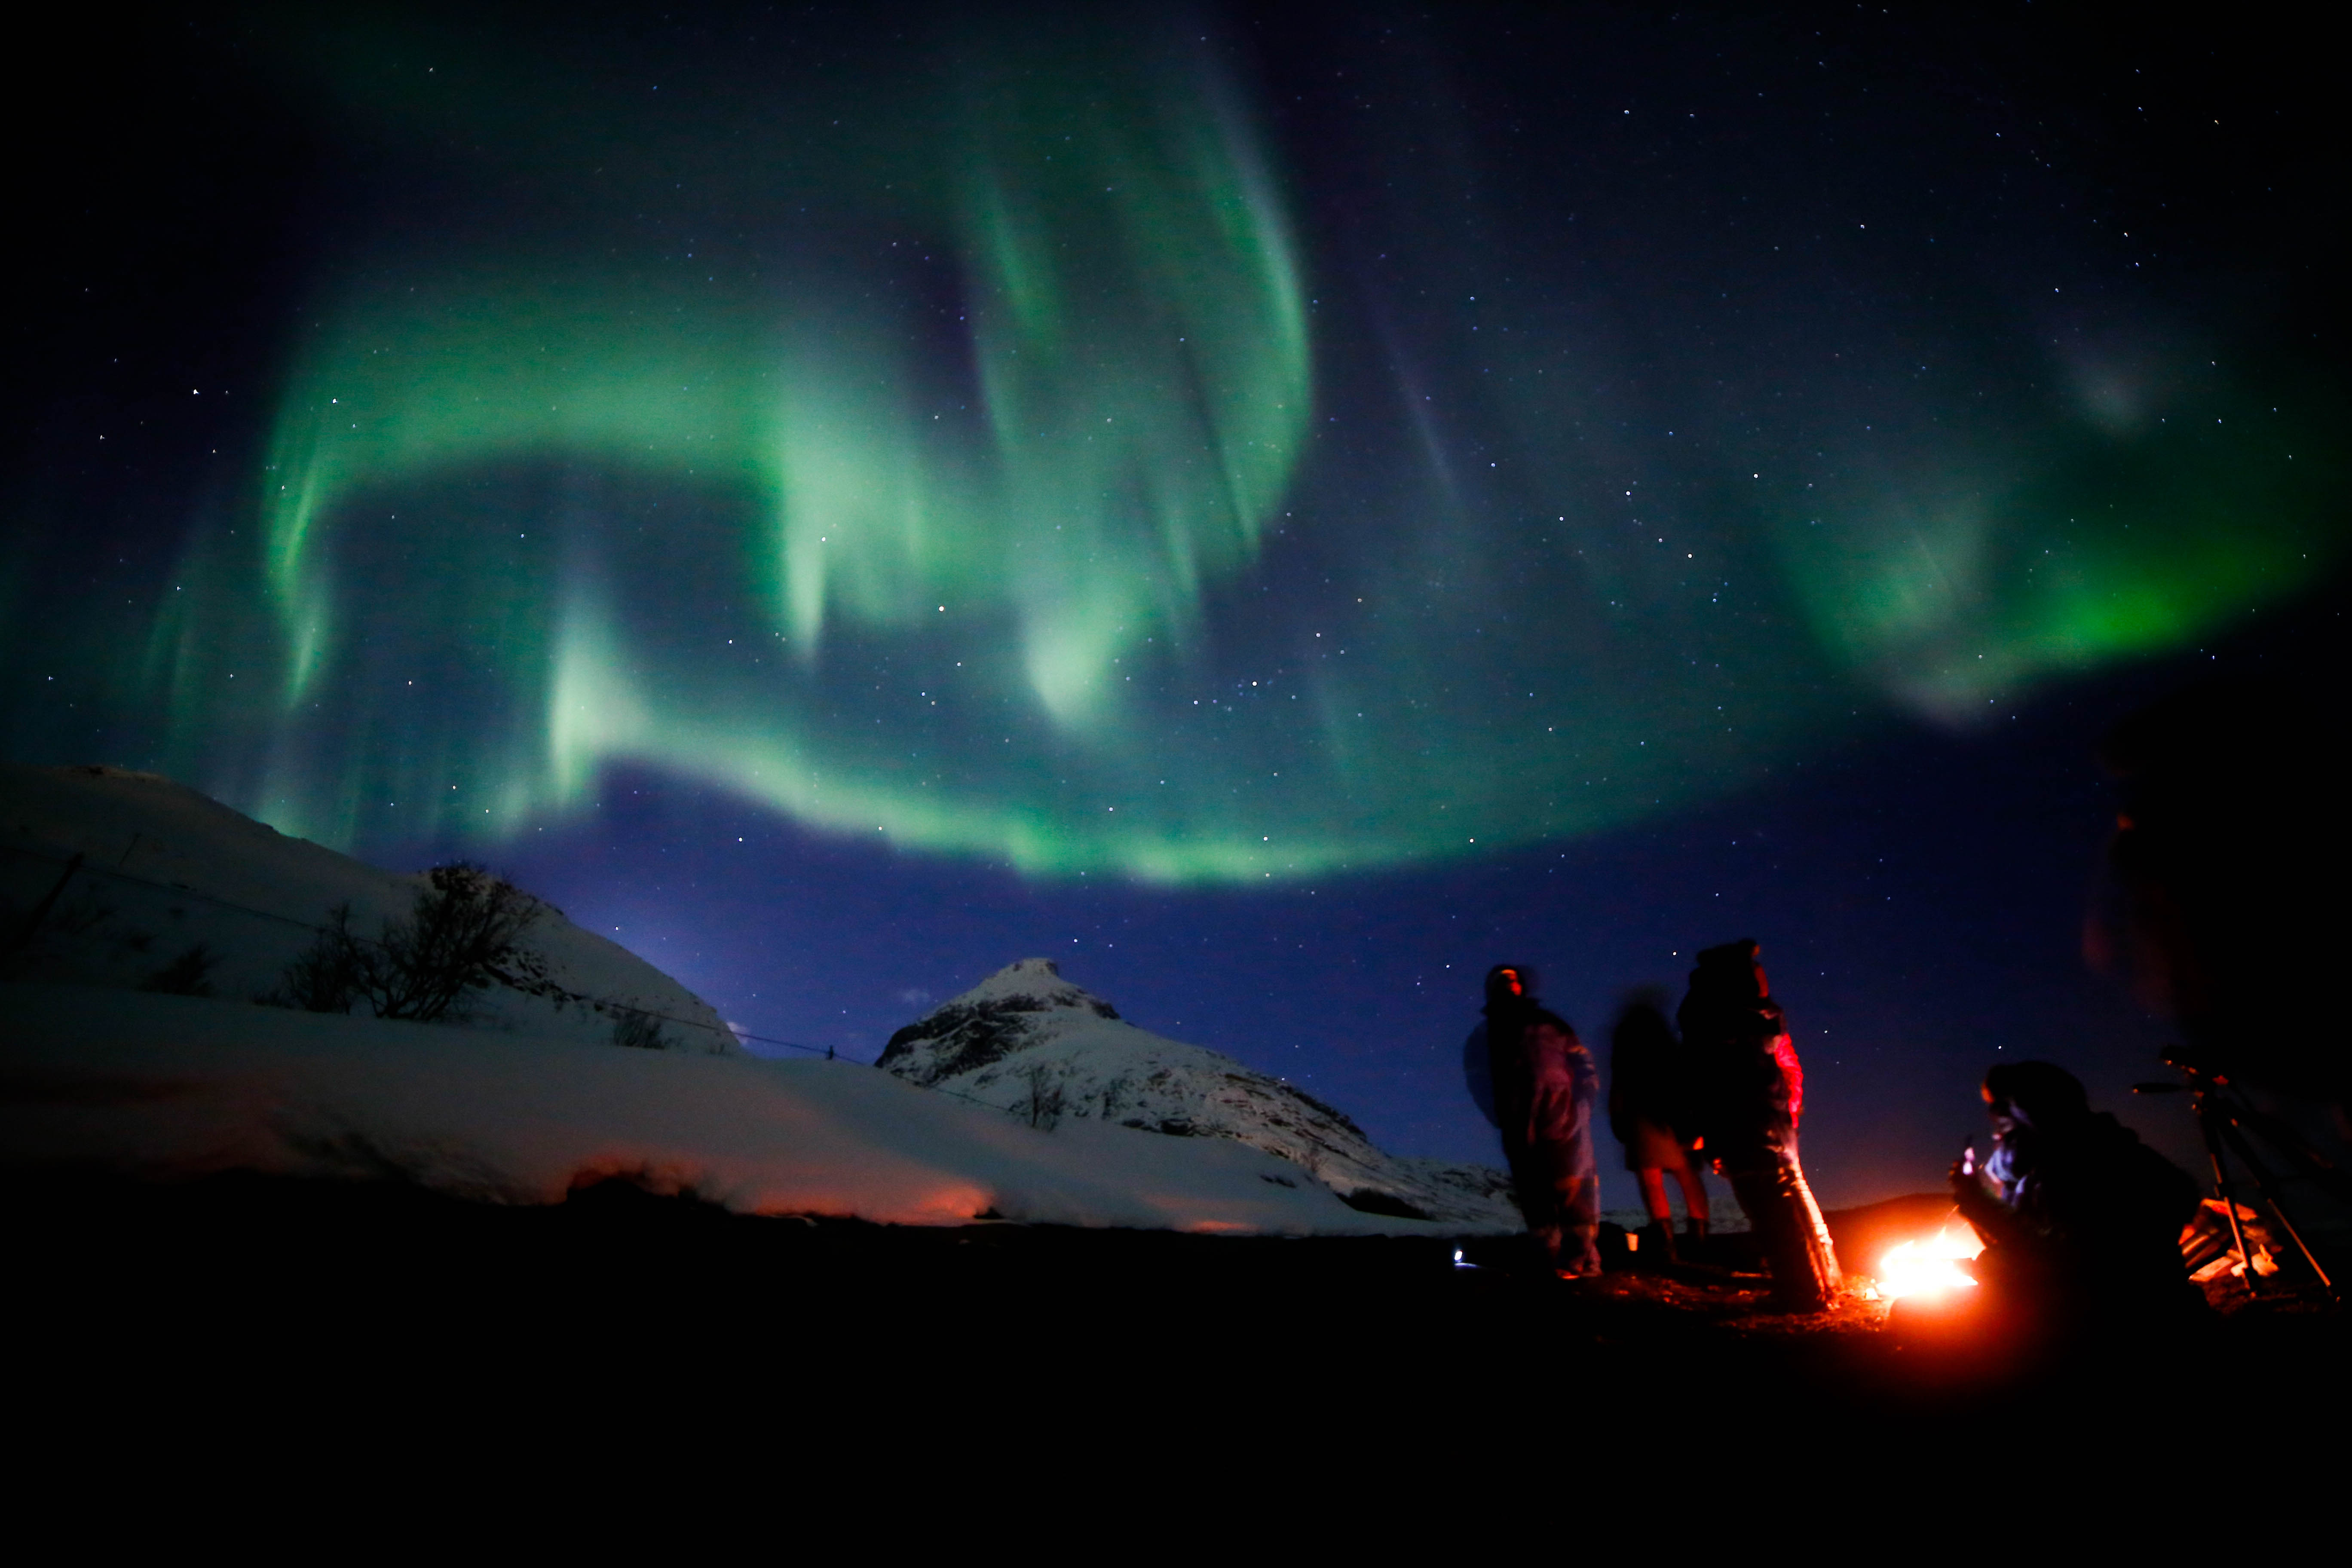 Aurora Boreal: O Que é, Onde Ver, Como Acontece e Dicas Para Viajar